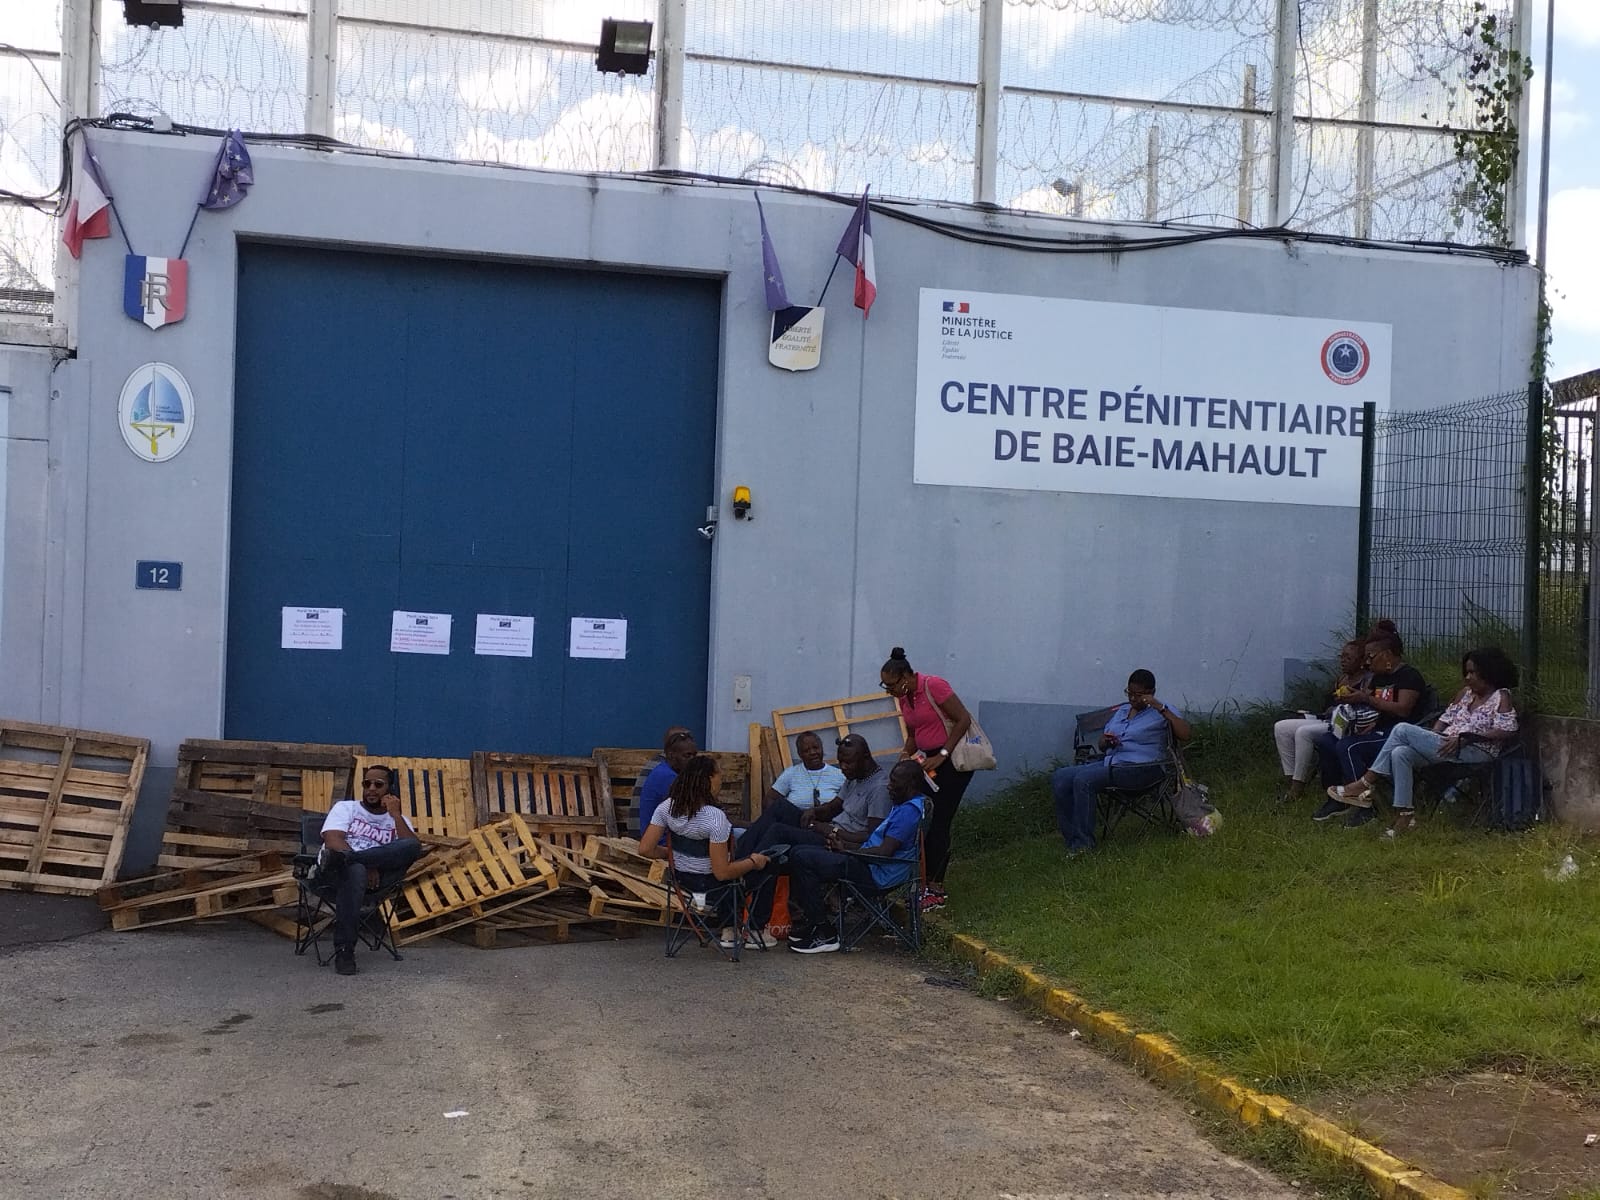     « Journée Morte » dans les prisons de Guadeloupe : « cela aurait pu arriver ici aussi »

